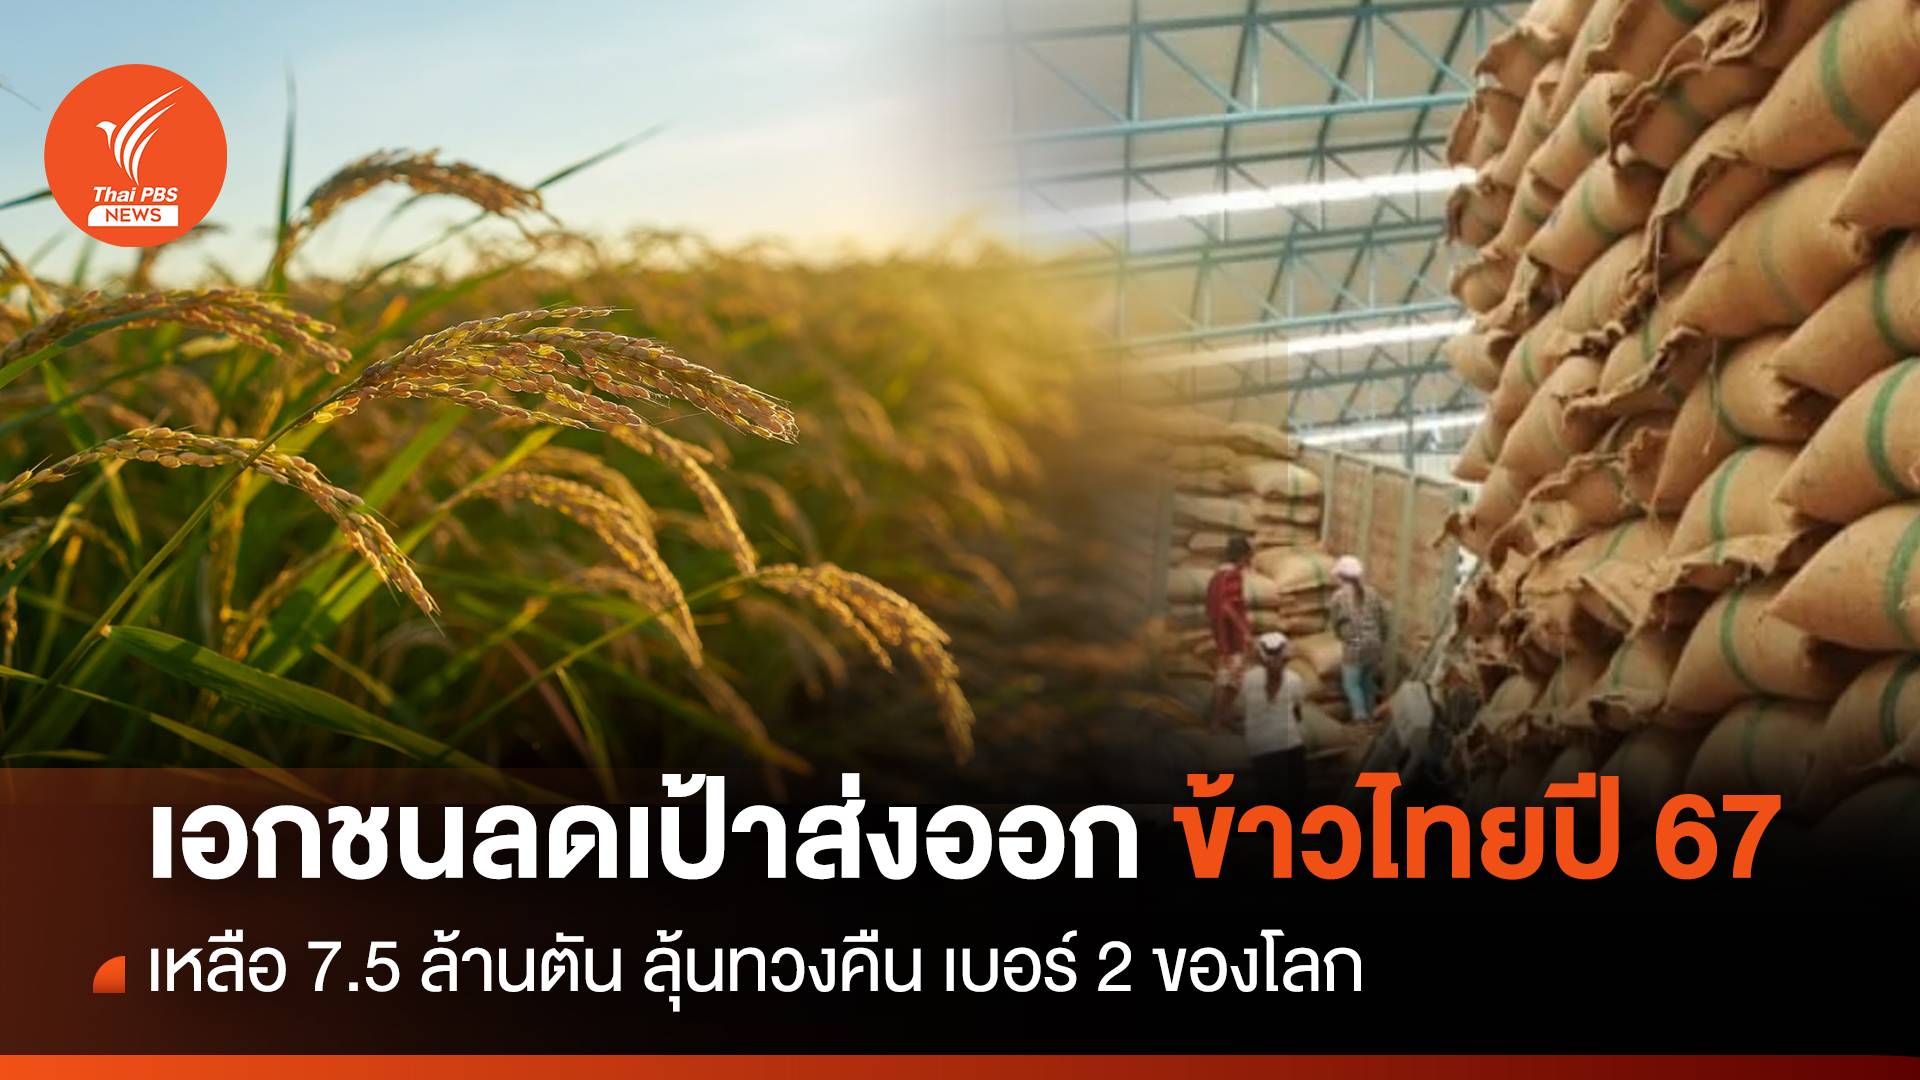 เอกชนลดเป้าส่งออกข้าวไทยปี 67 เหลือ 7.5 ล้านตัน